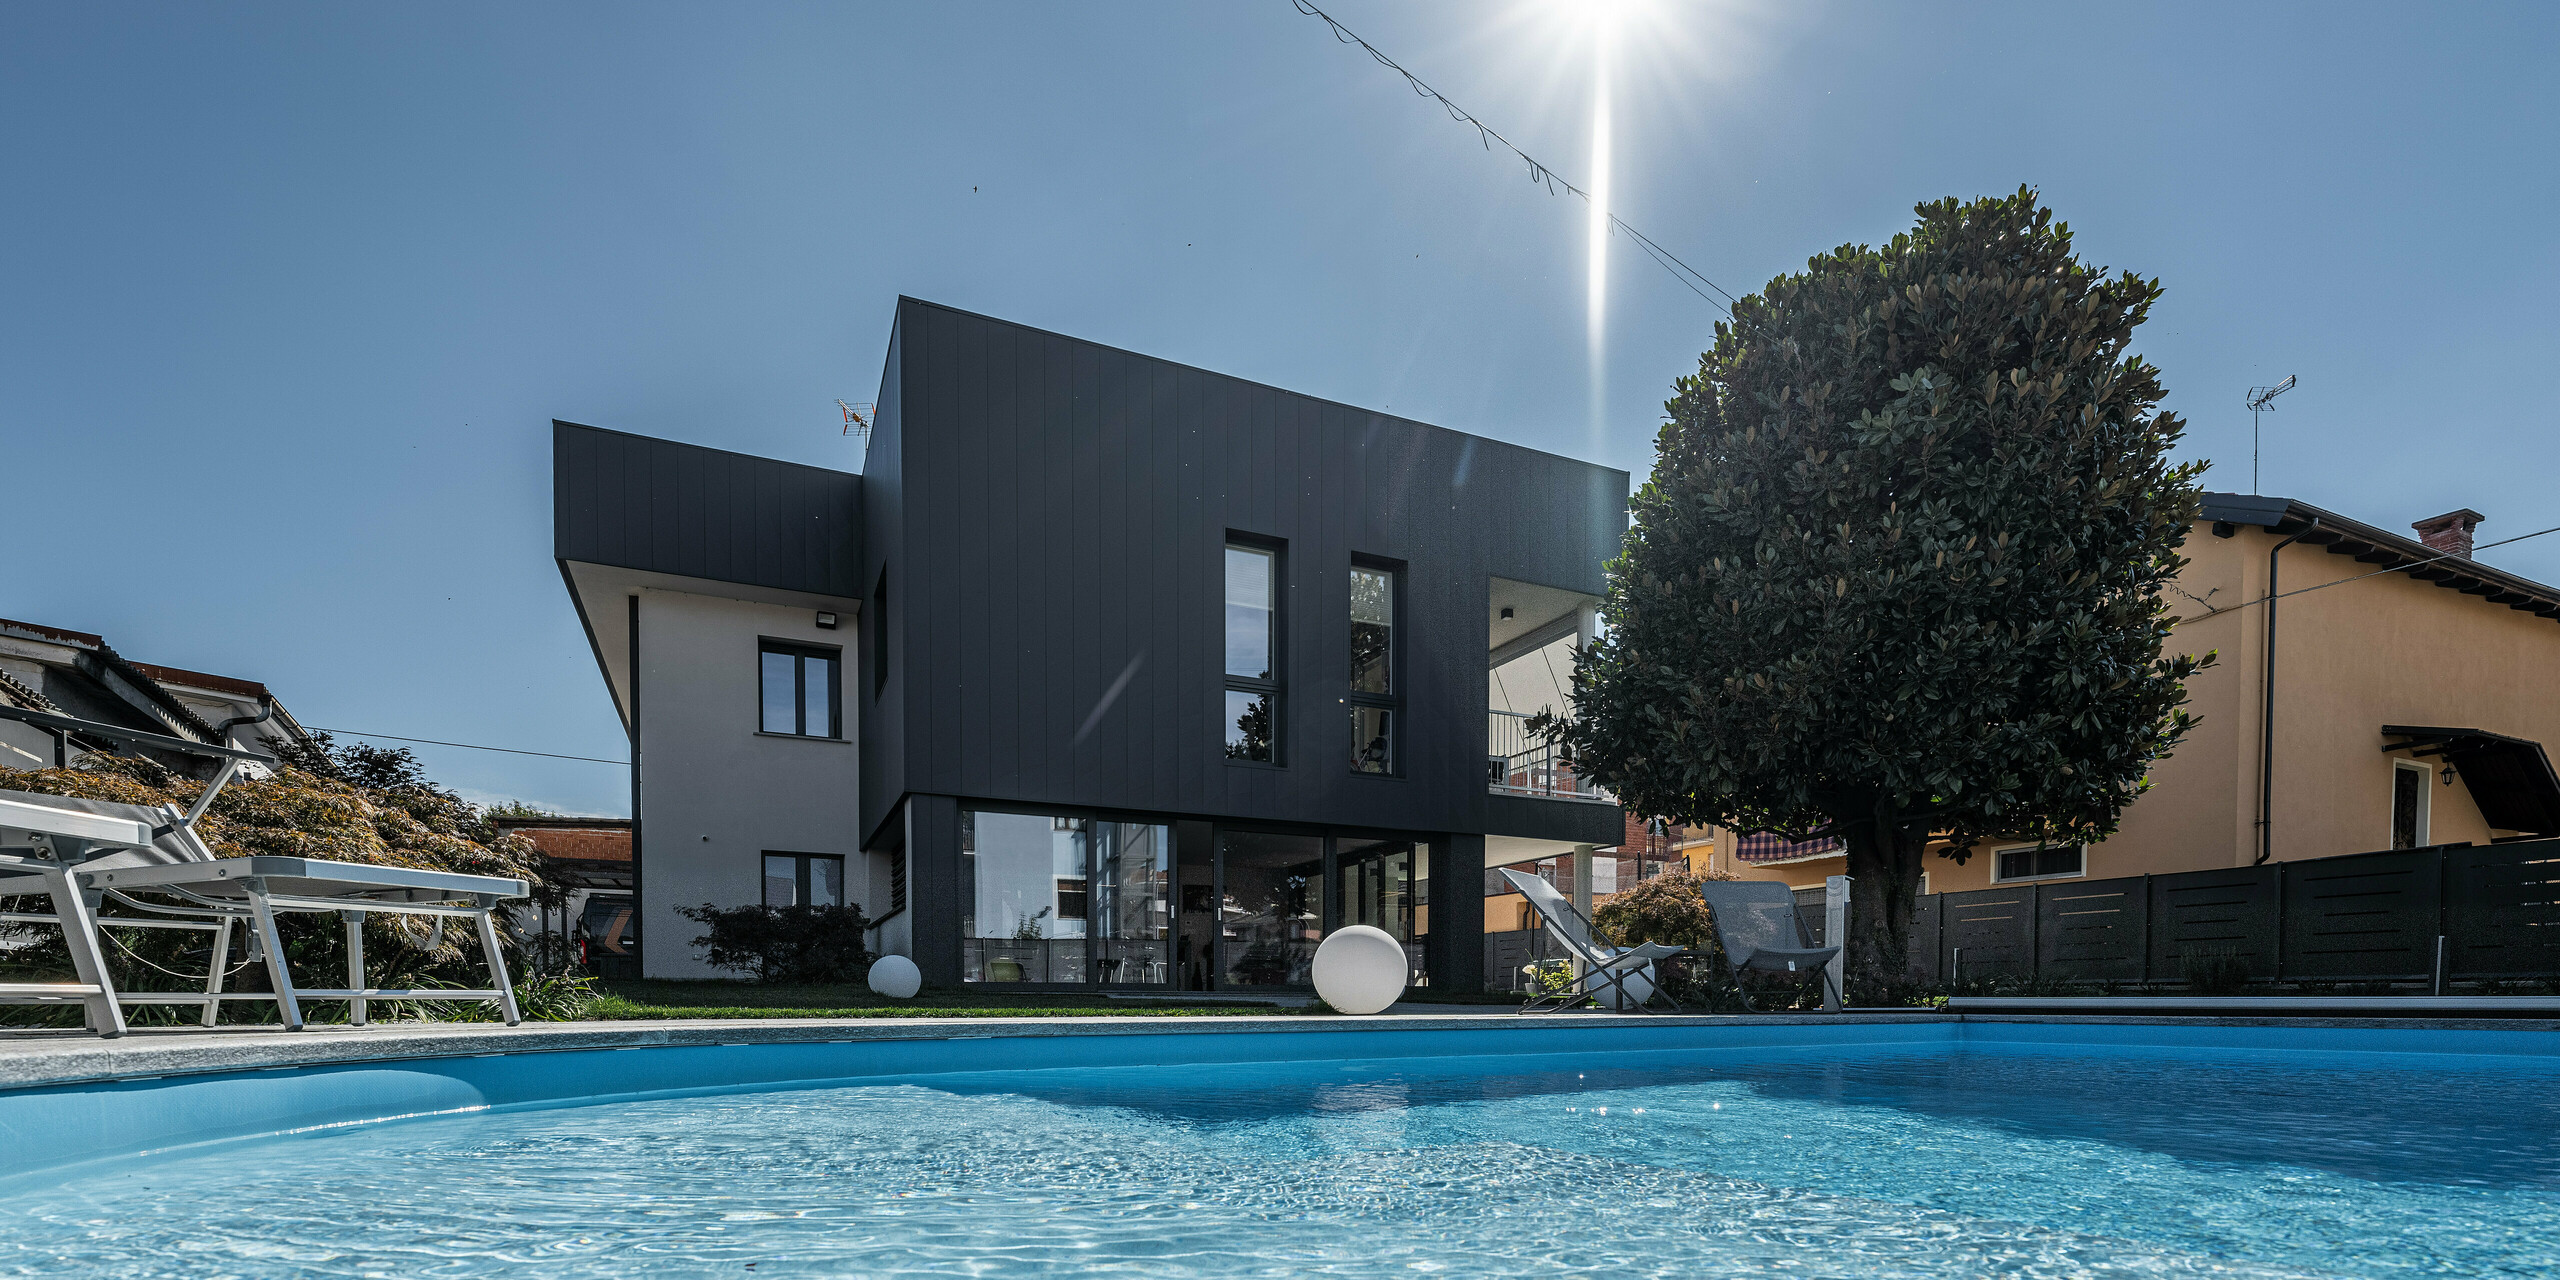 Eine ansprechende Ansicht eines Einfamilienhauses in Savigliano, Italien, vom blauen Wasser des Pools aus betrachtet, mit einer modernen PREFA Siding.X Aluminiumfassade in P.10 Dunkelgrau. Die Blechfassade präsentiert sich in klaren, scharfen Linien, die das zeitgenössische Design unterstreichen. Die Reflexion der Sonne im Wasser und die entspannende Poolumgebung betonen die luxuriöse und einladende Atmosphäre des Wohnortes.